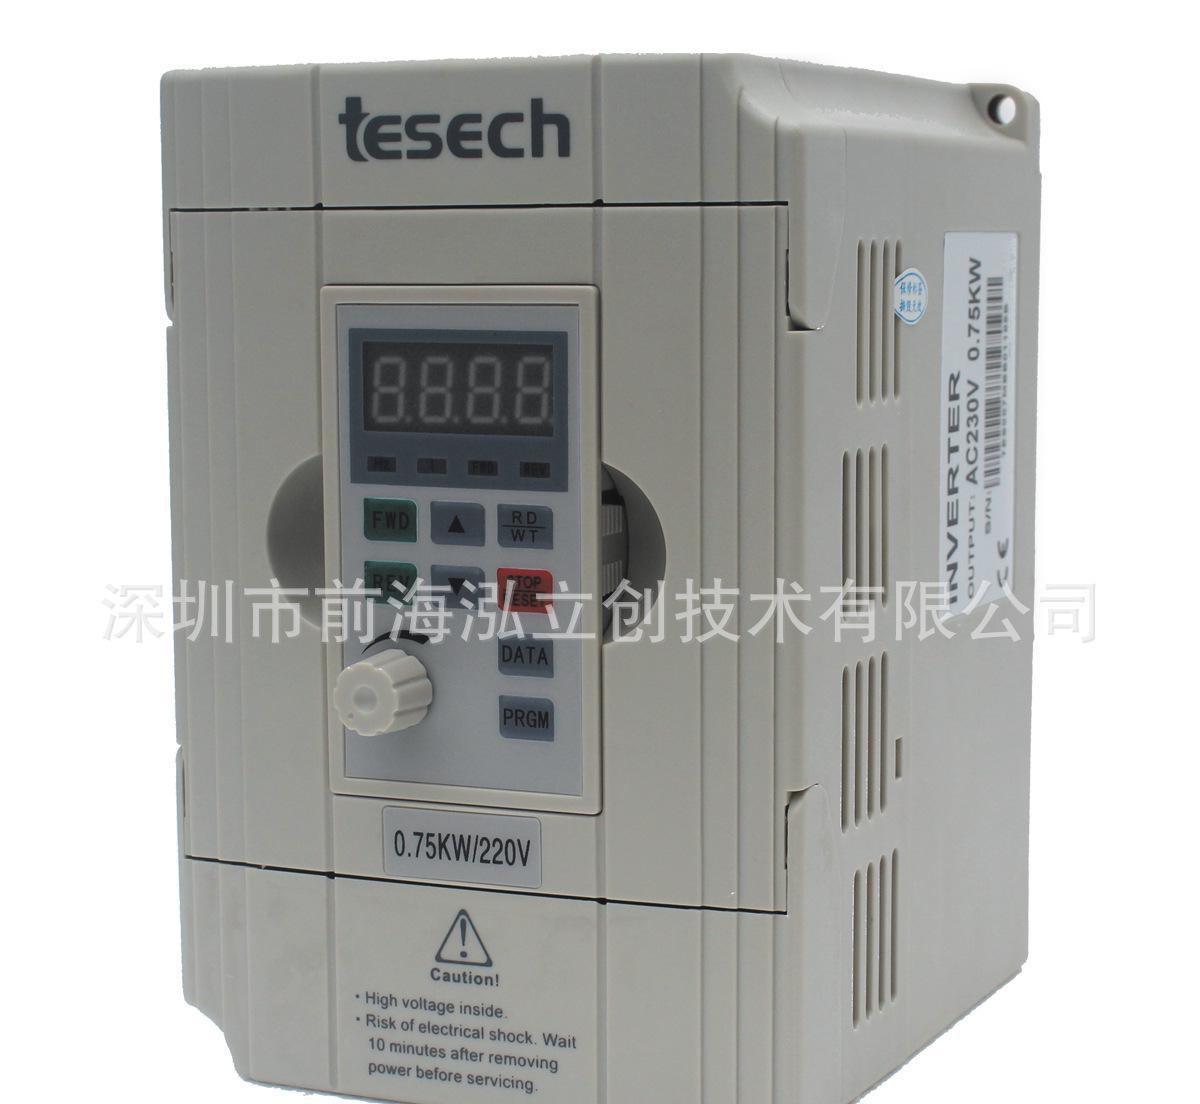 台湾变频器,台湾tesech变频器,tesech变频器,台湾TESECH变频器 电